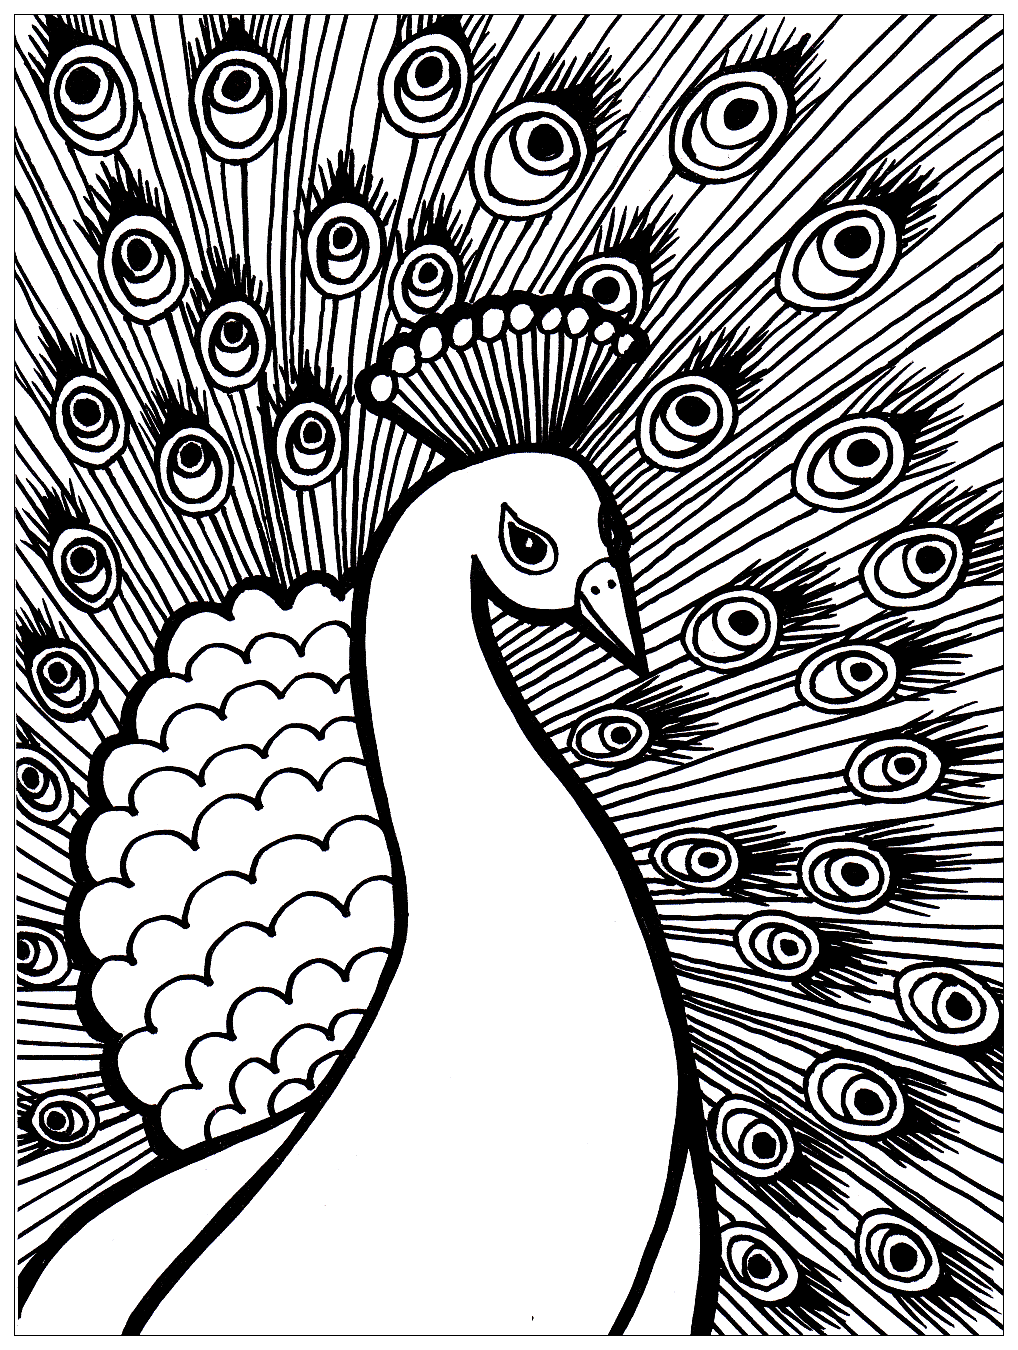 Disegni da colorare per adulti : Peacocks - 1